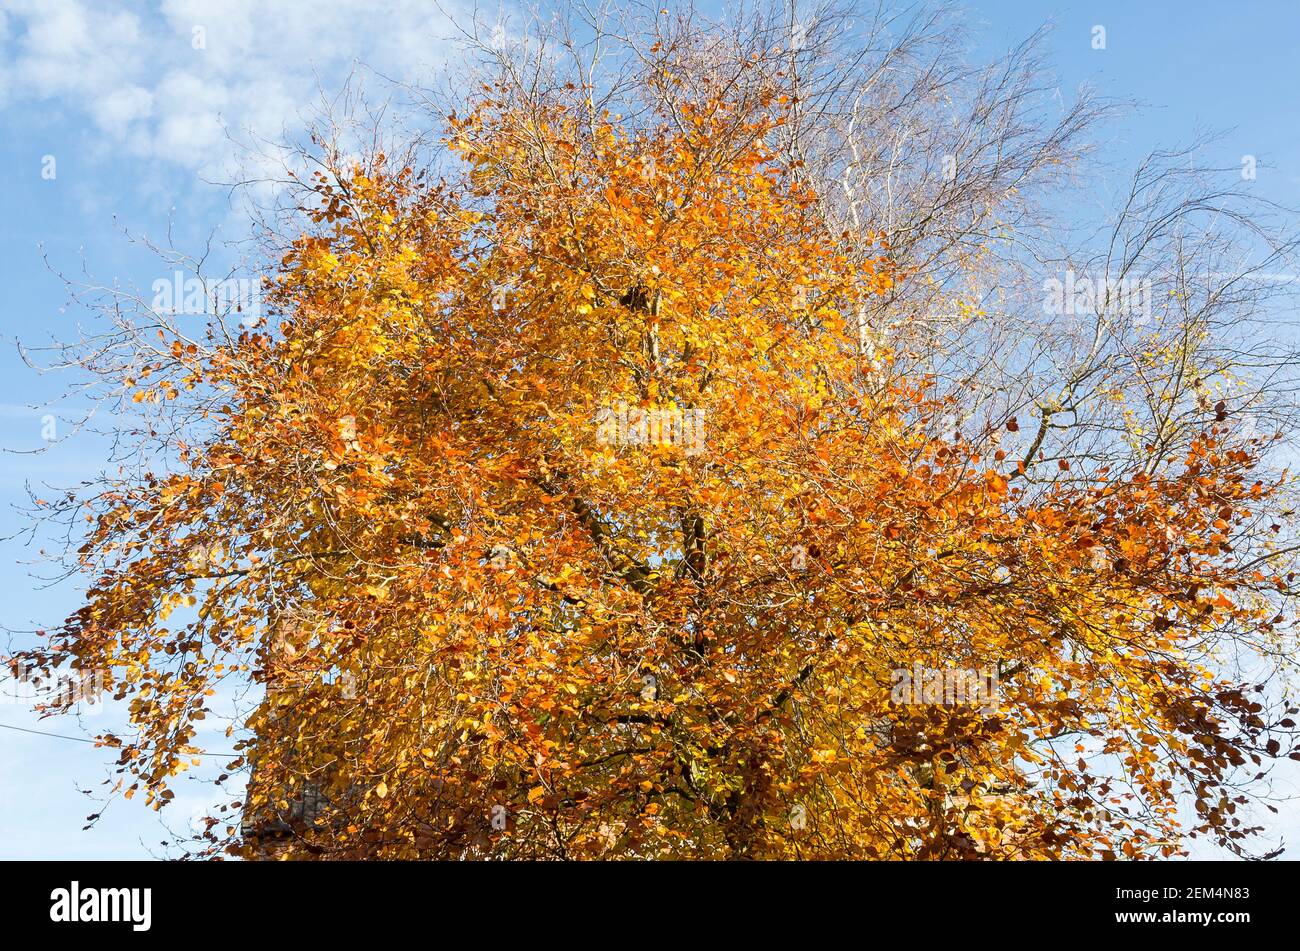 Este viejo árbol de haya ya ha comenzado a derramar sus hojas otoñales, pero sigue siendo una hermosa vista en noviembre Foto de stock